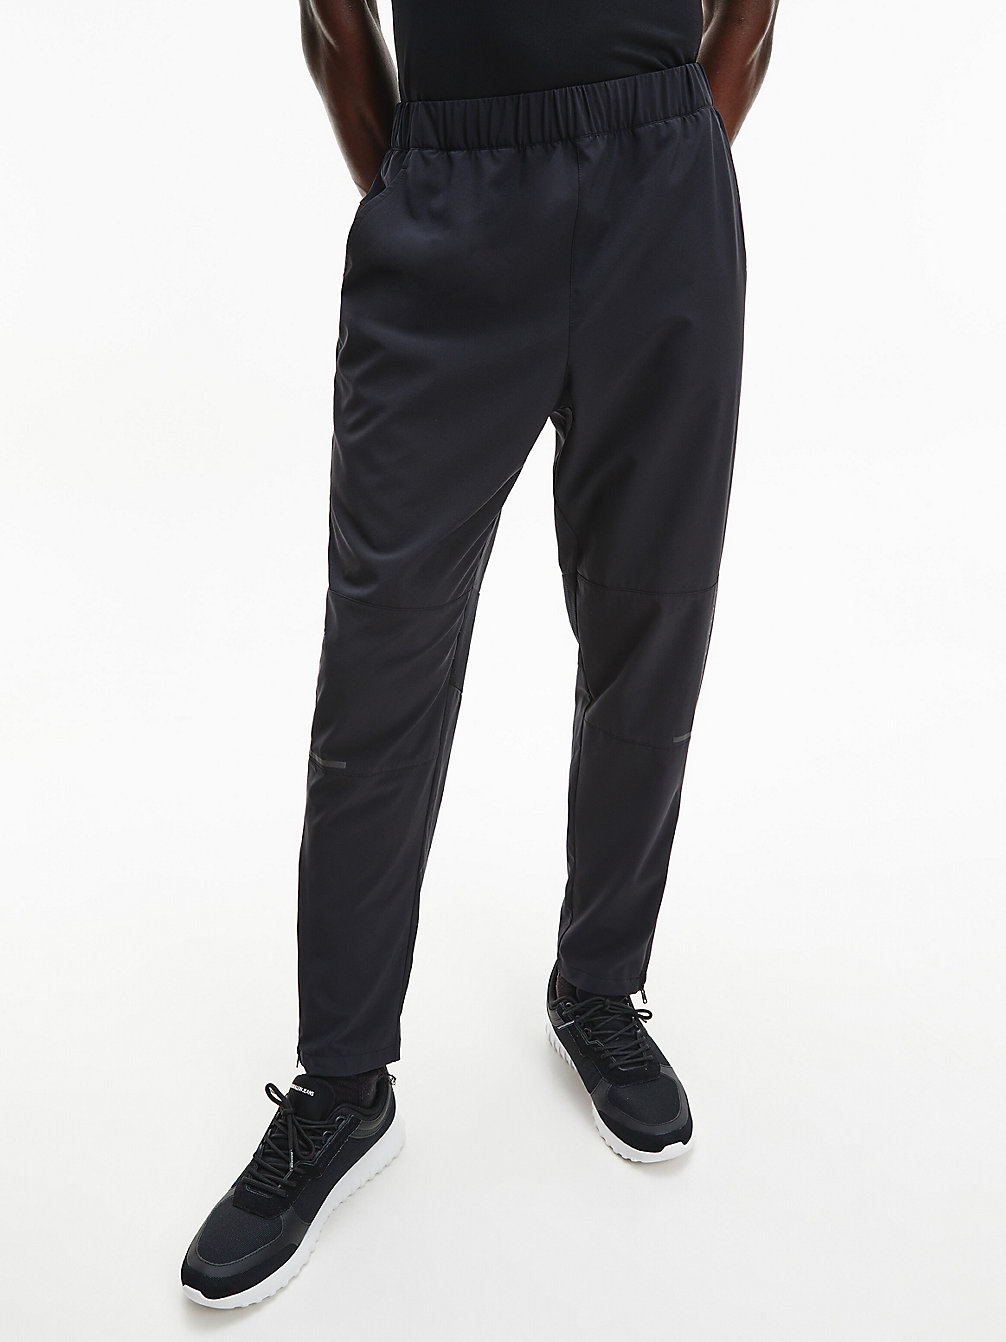 CK BLACK > Spodnie Dresowe Z Panelami Z Siateczki > undefined Mężczyźni - Calvin Klein